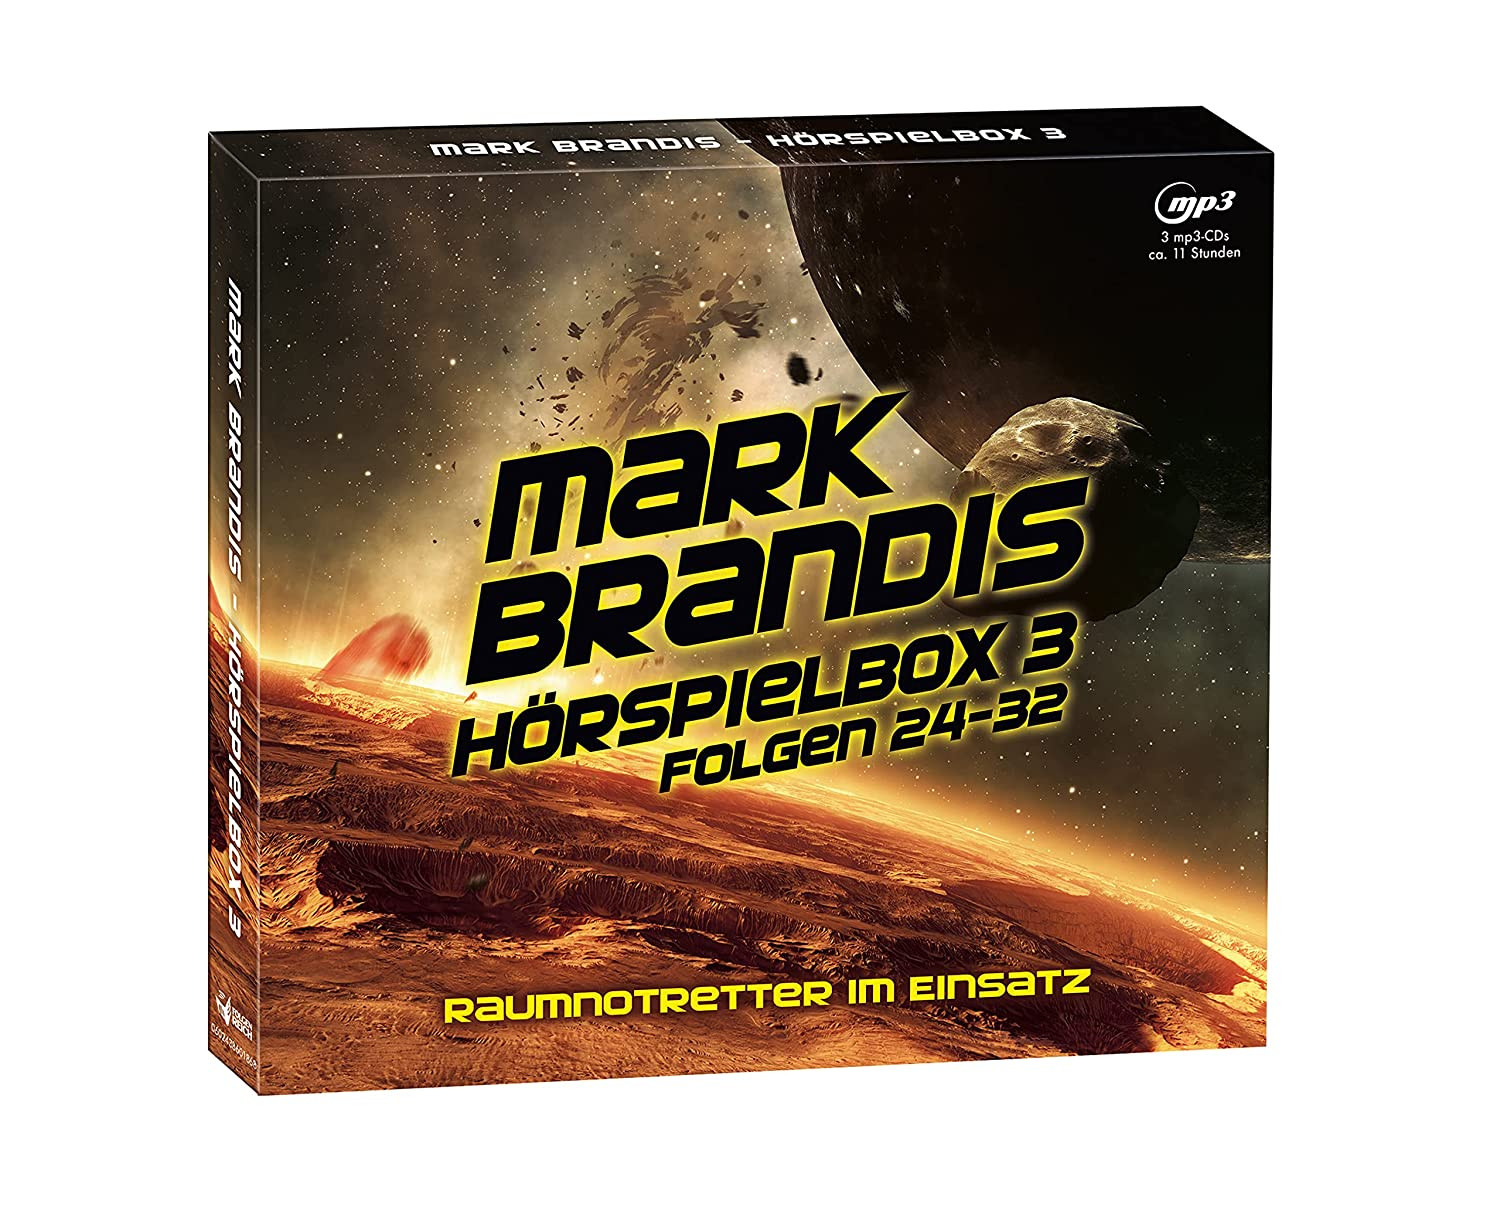 Mark Brandis - Hörspielbox 3 Raumnotretter Im Einsatz